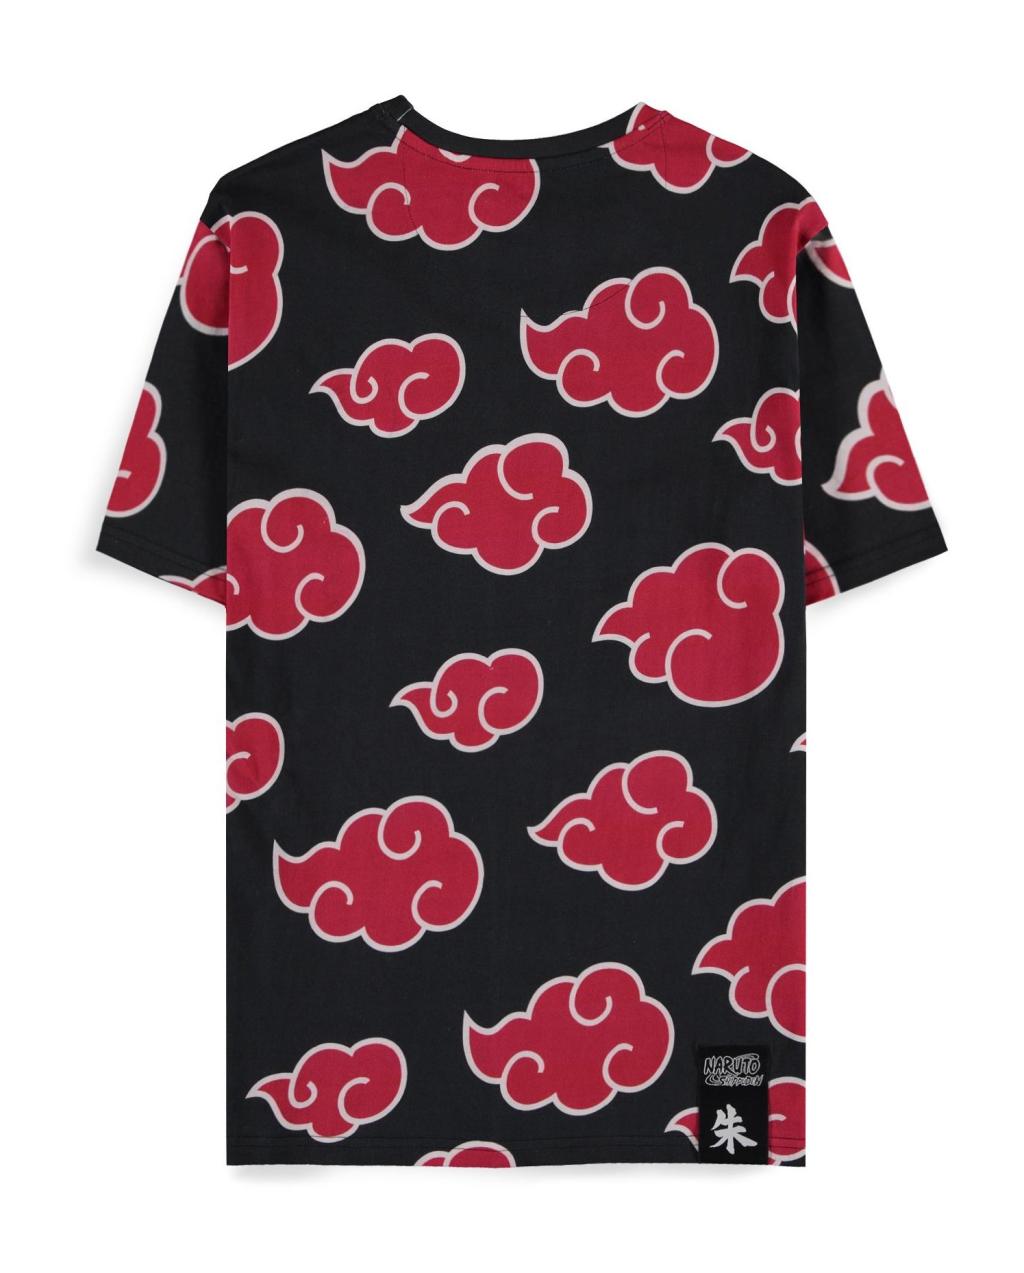 NARUTO SHIPPUDEN - Itachi Clouds - Men's T-shirt (L)